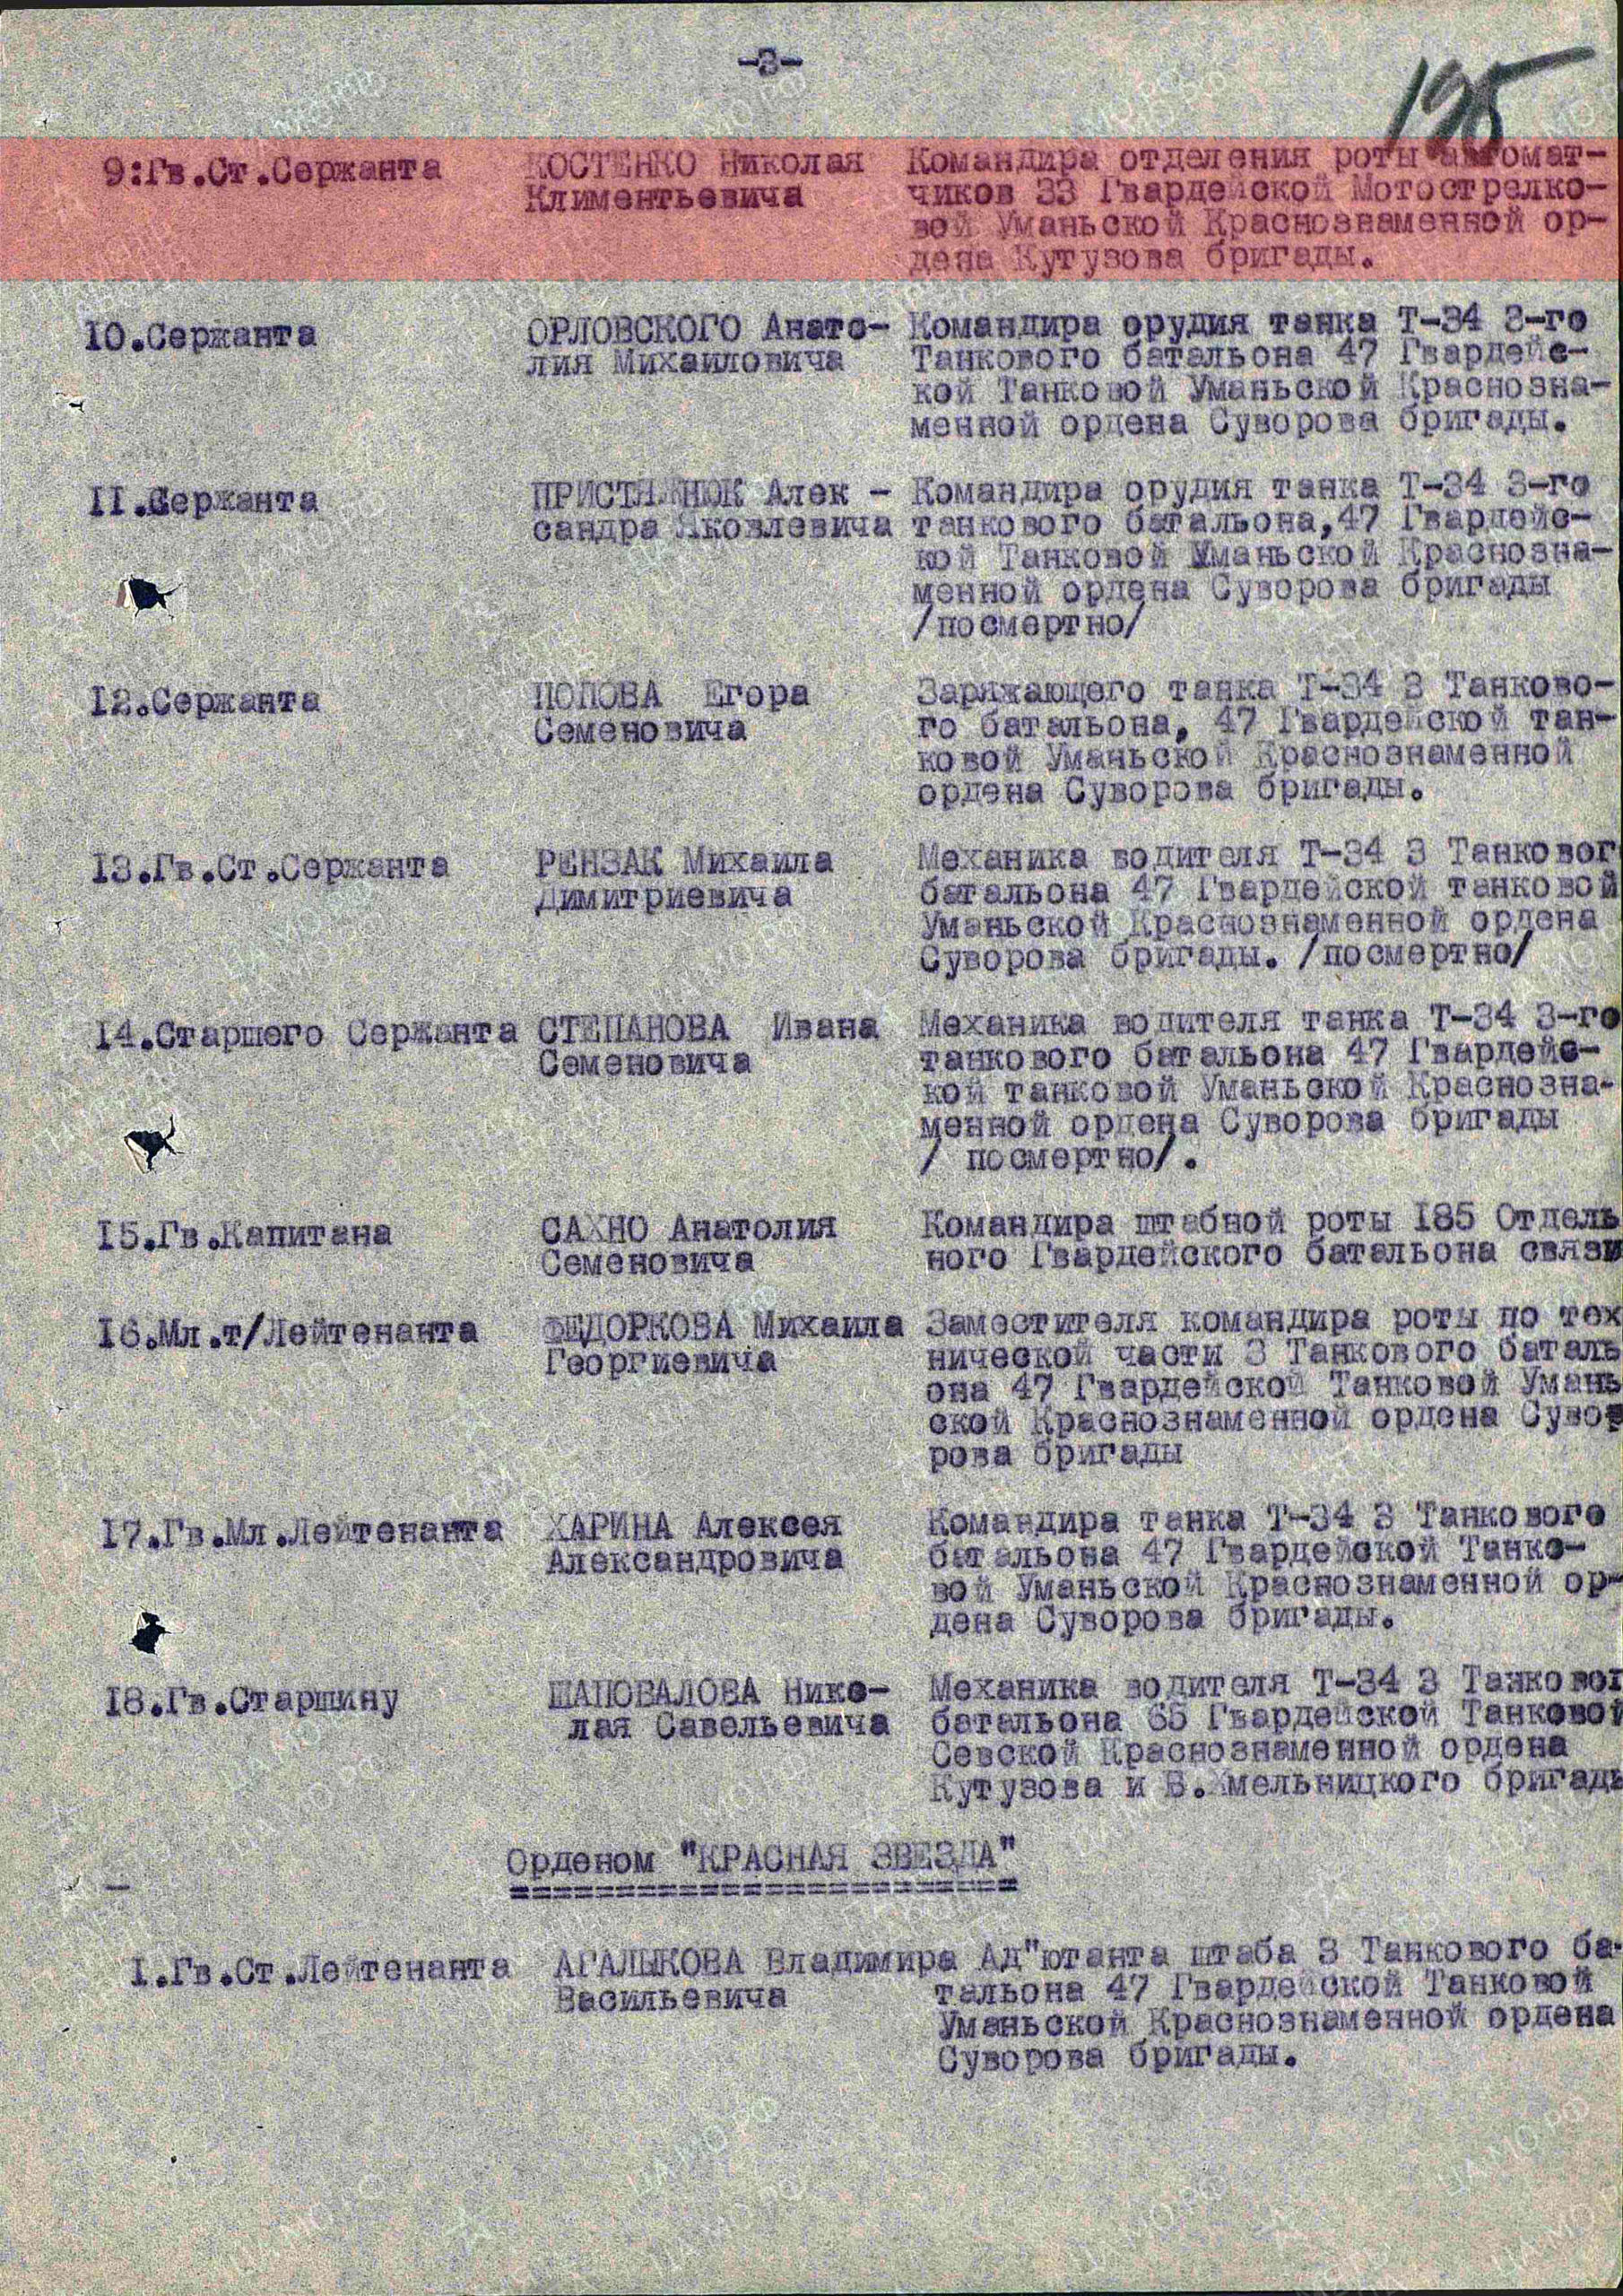 Лист приказа о награждении (строка в наградном списке).  Орден Отечественной войны II степени